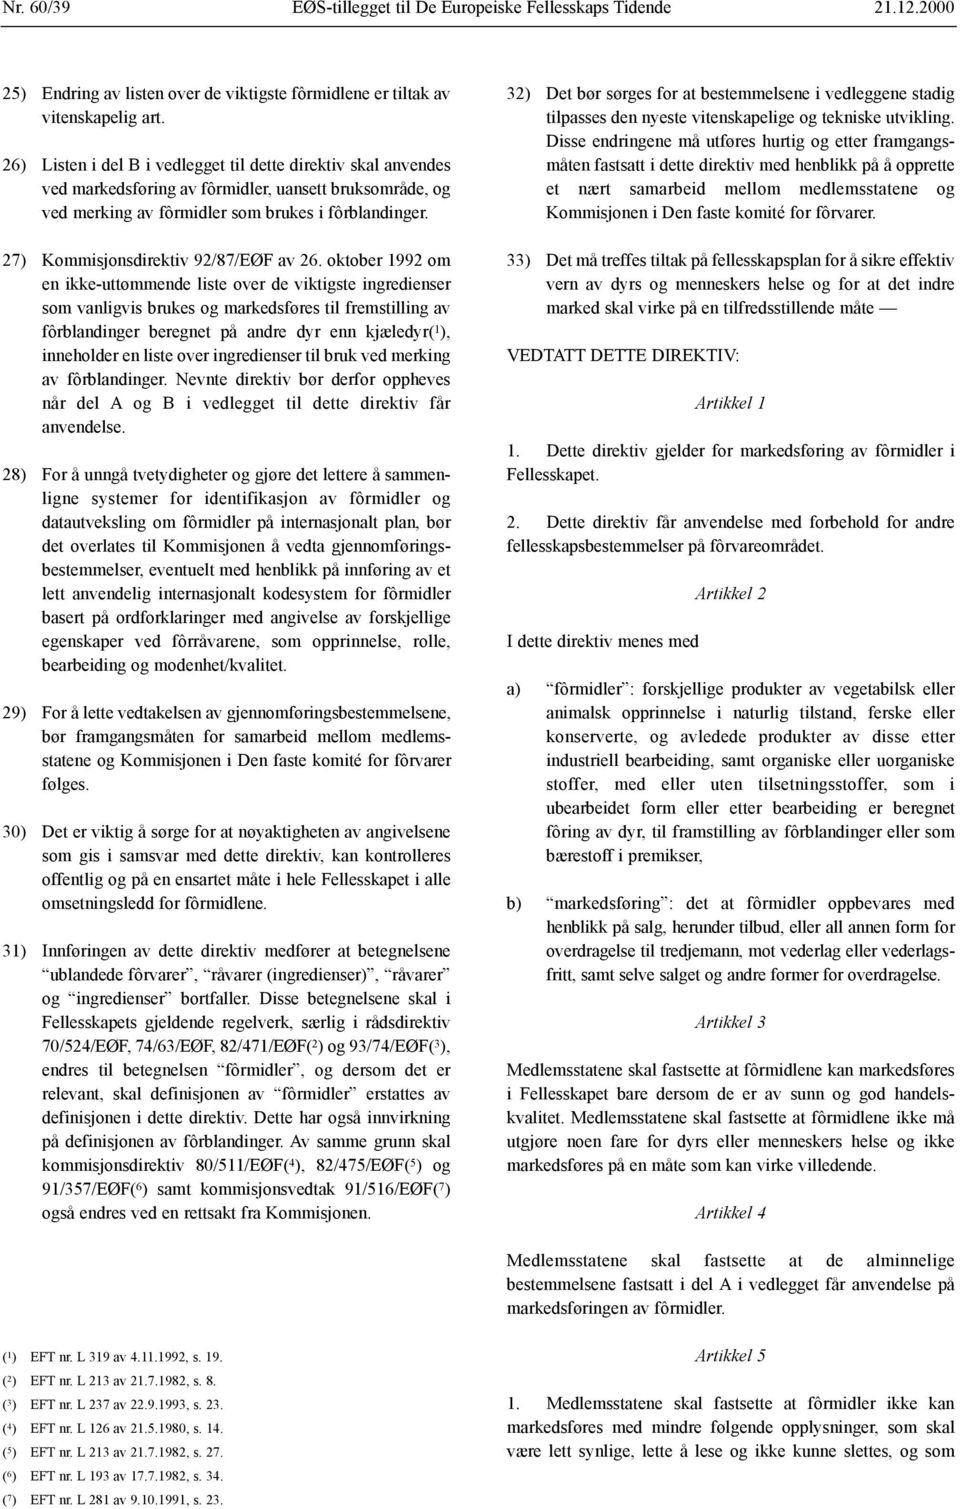 27) Kommisjonsdirektiv 92/87/EØF av 26.